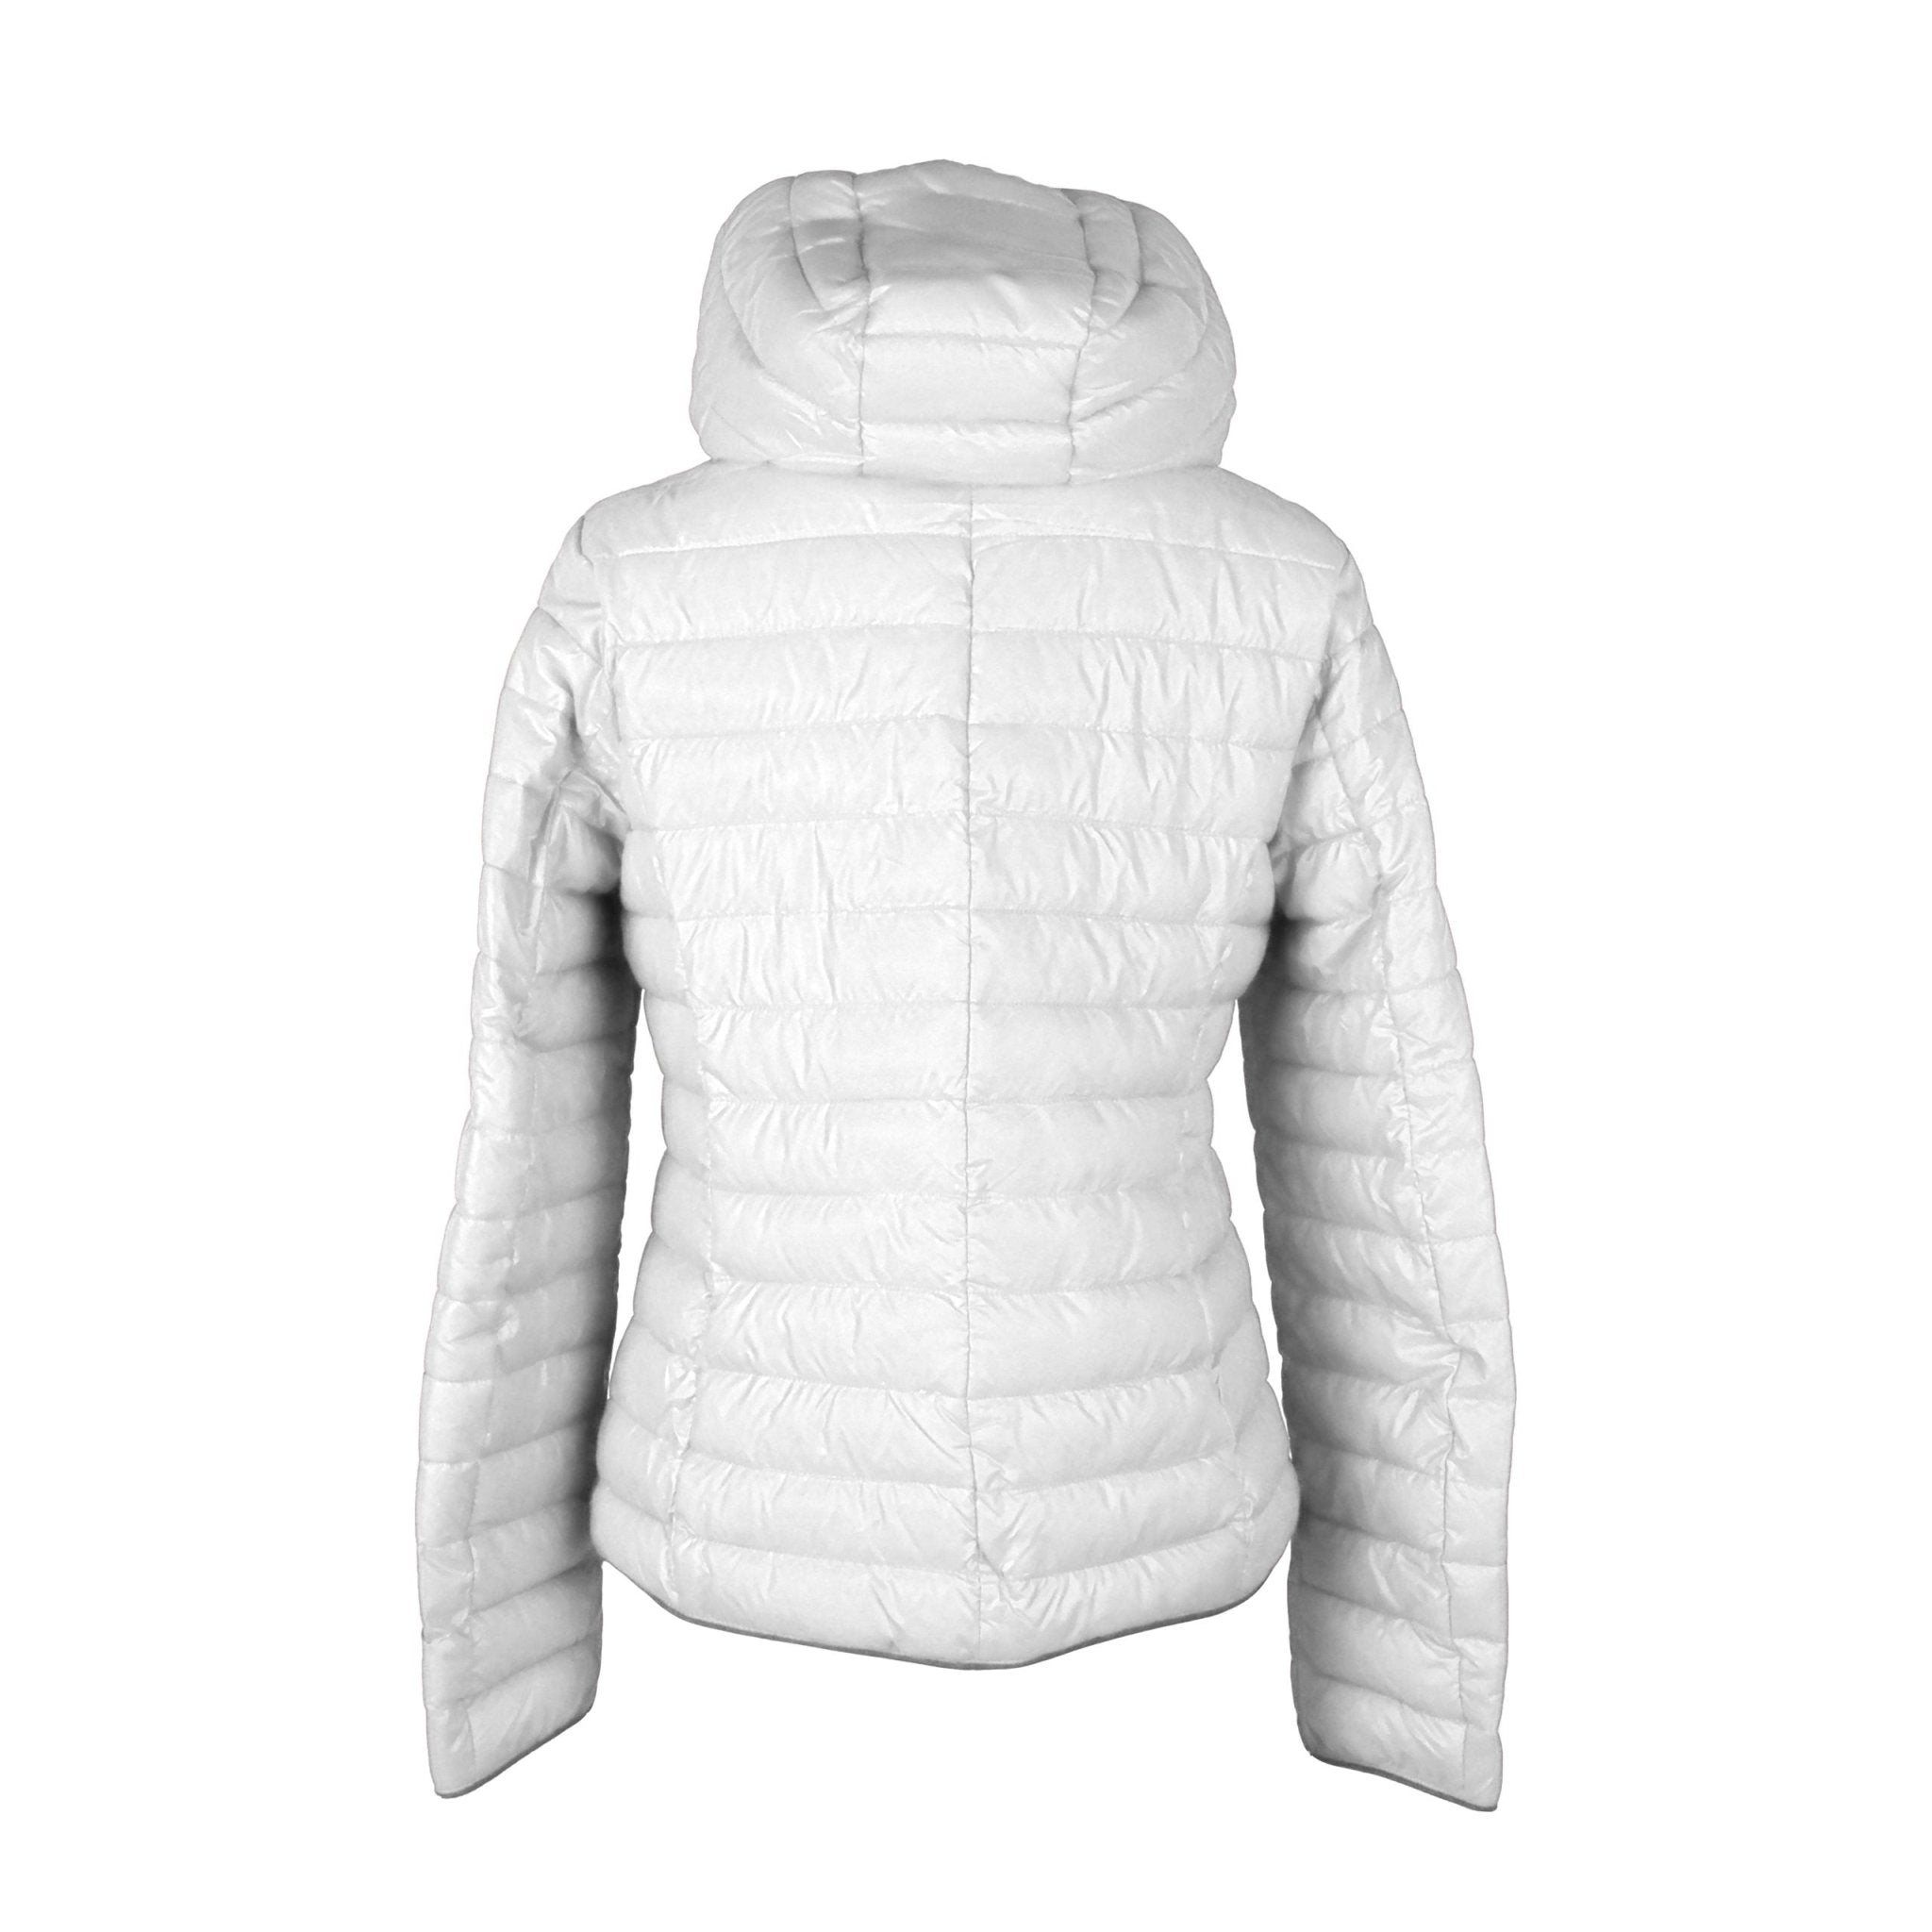 Mangano White Polyester Jackets & Coat - Fizigo